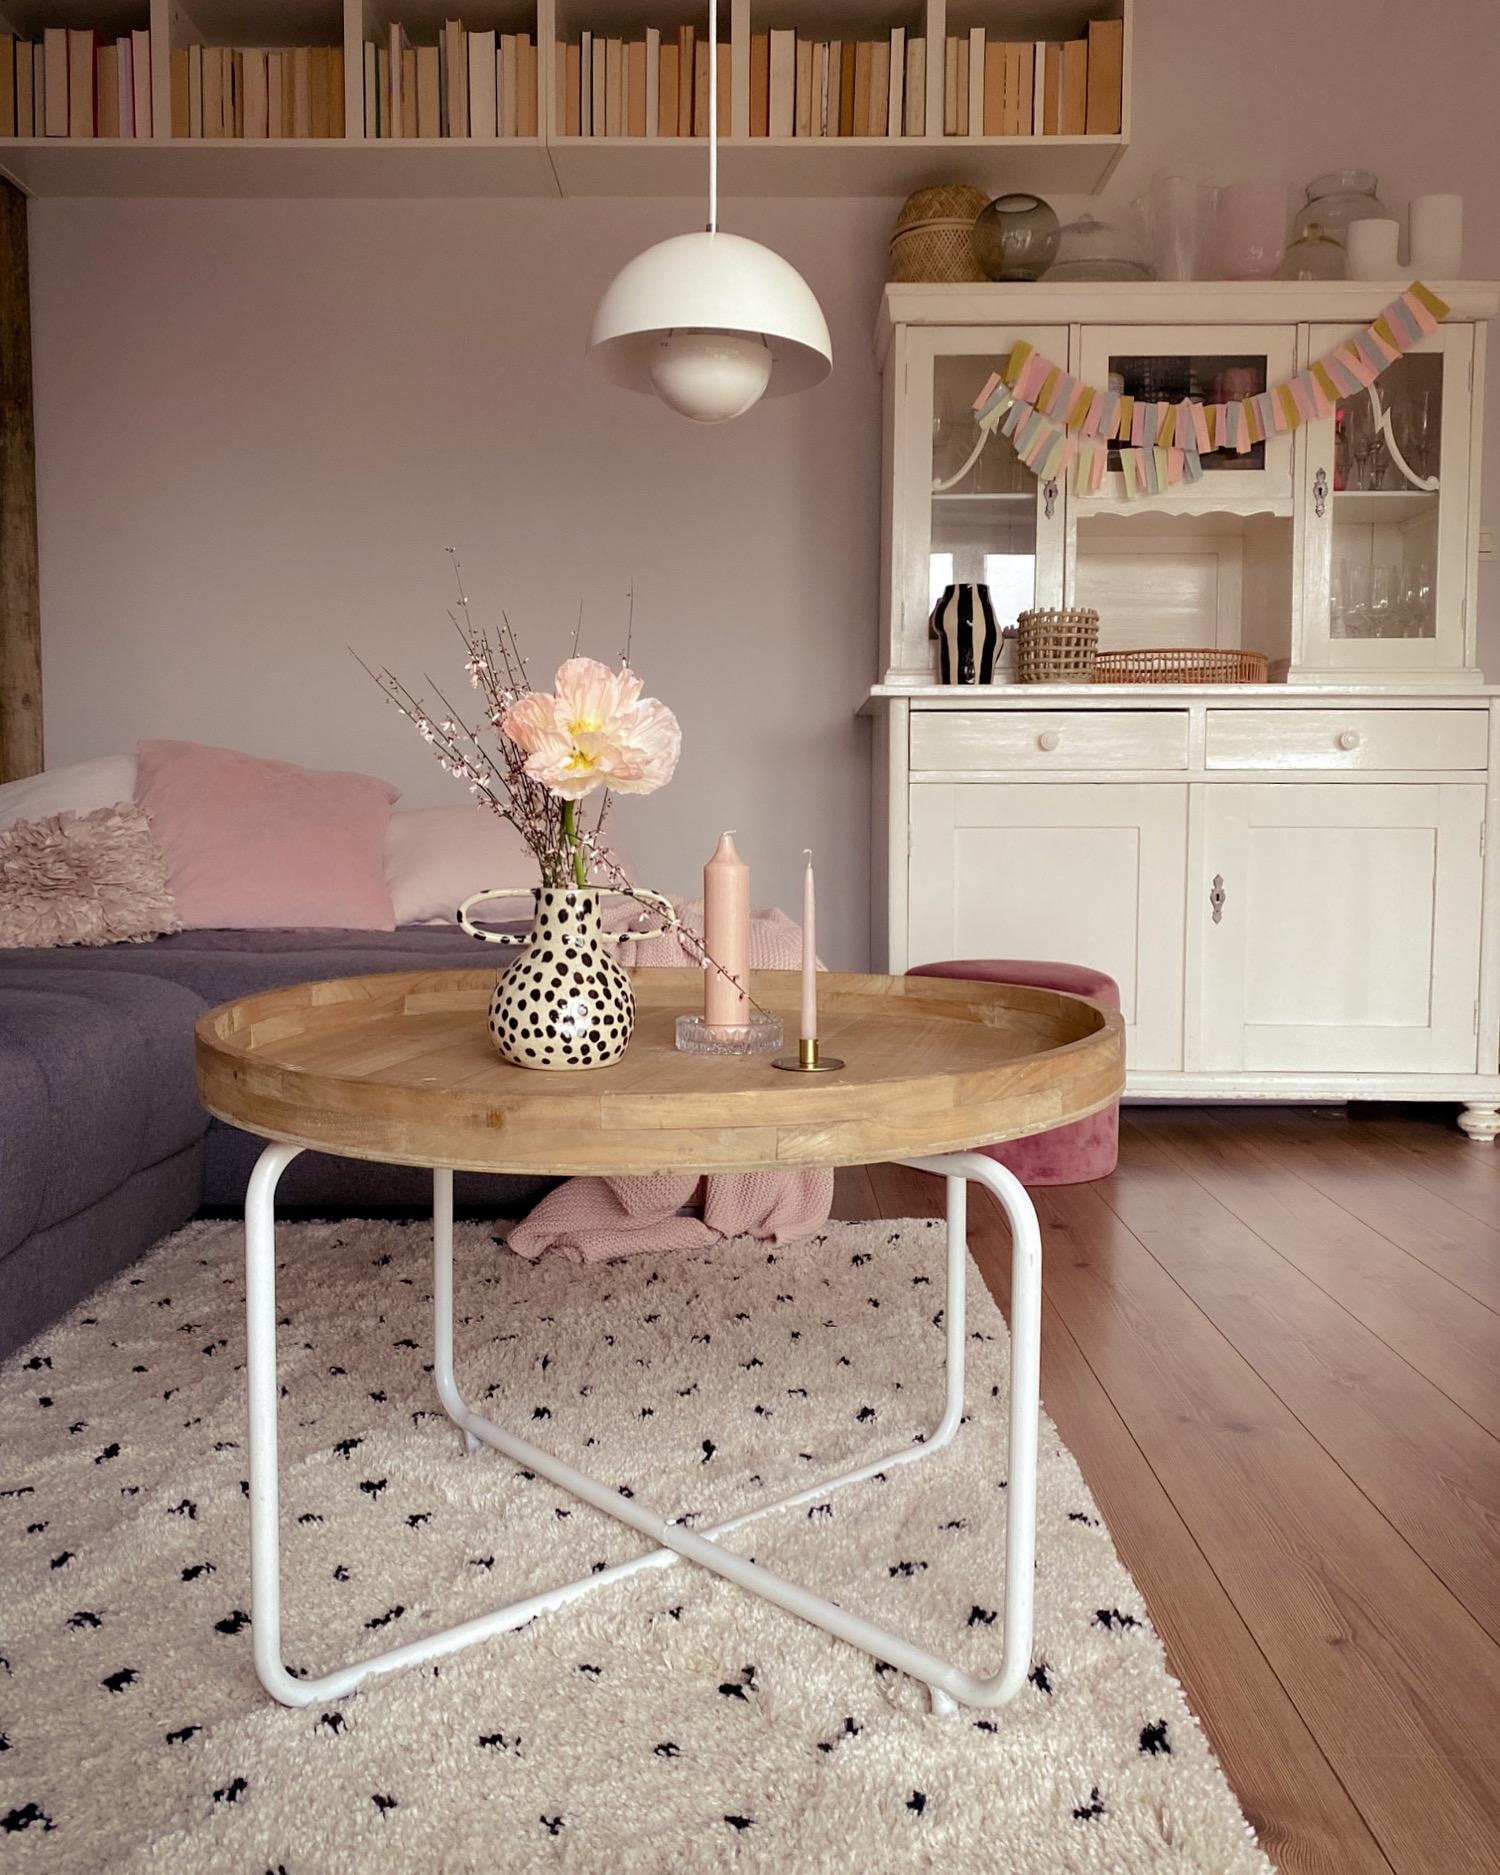 Wohnzimmerinspiration
#livingroom#bookshelf#buffet#dots#interiorblogger#vintage#couchstyle